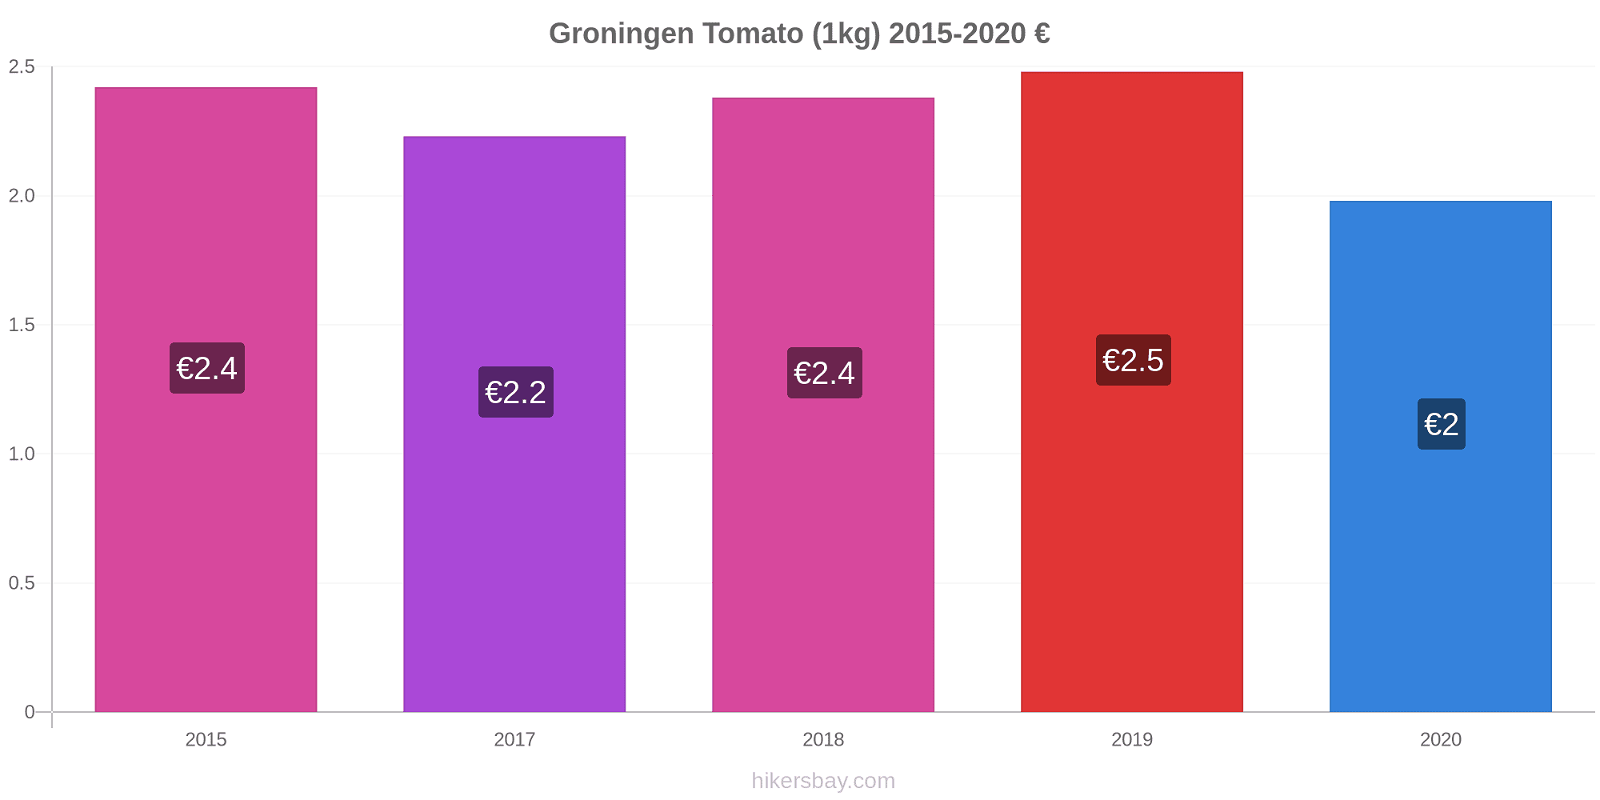 Groningen price changes Tomato (1kg) hikersbay.com